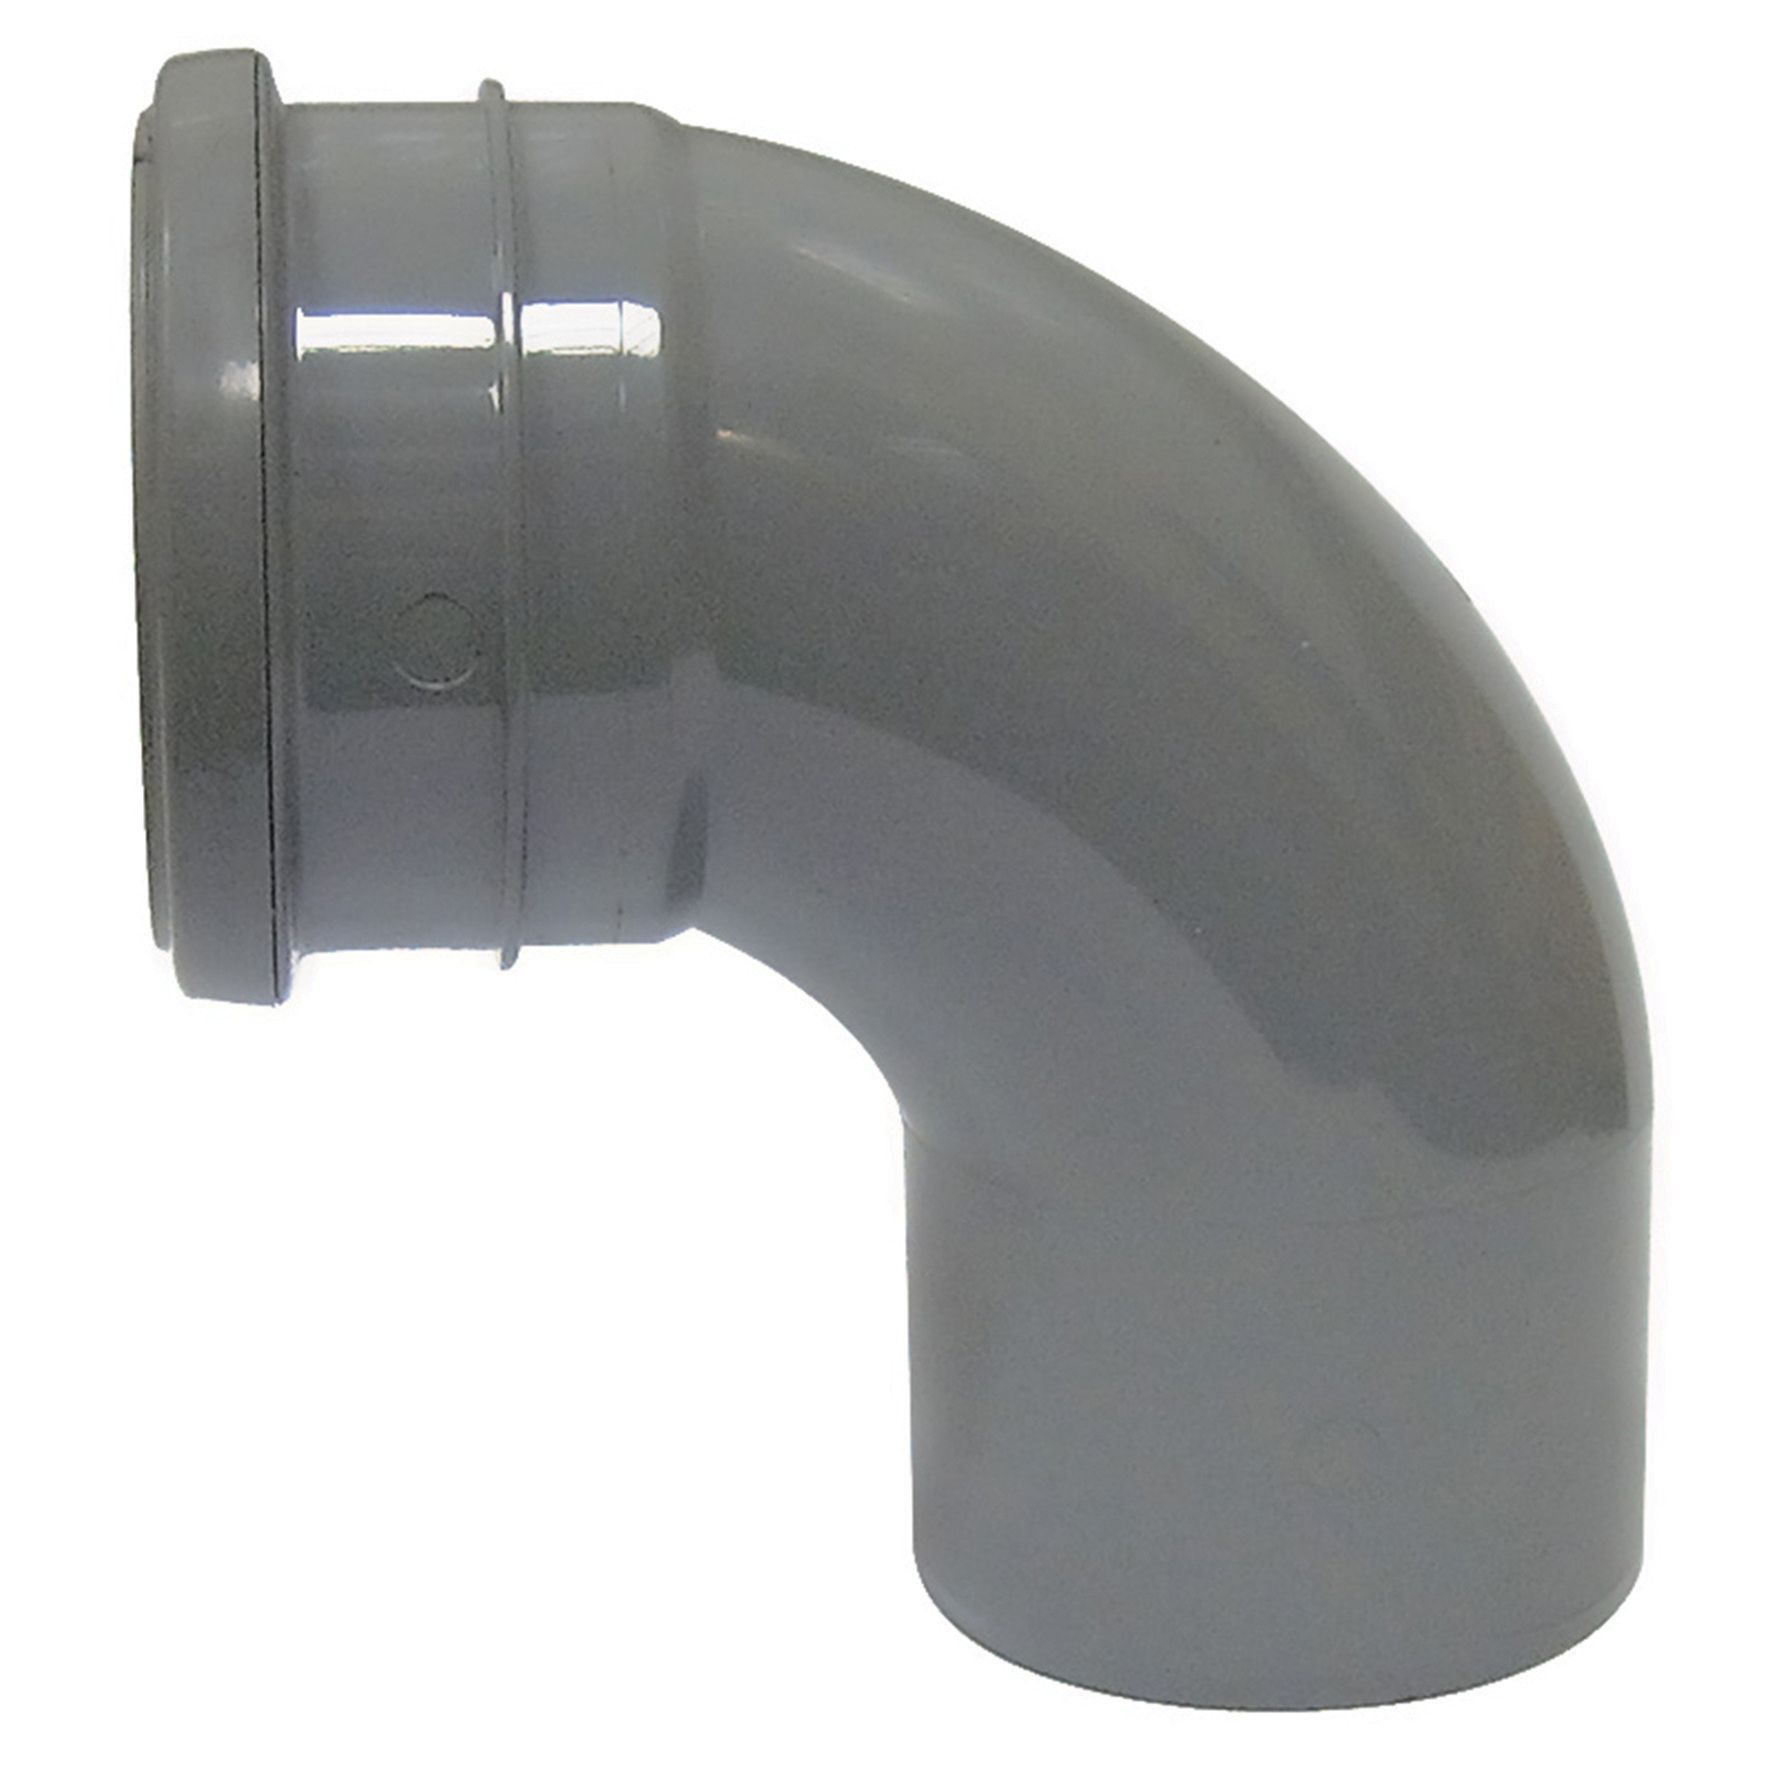 Image of FloPlast 110mm Soil Pipe Bend Socket/Spigot 92.5° - Grey